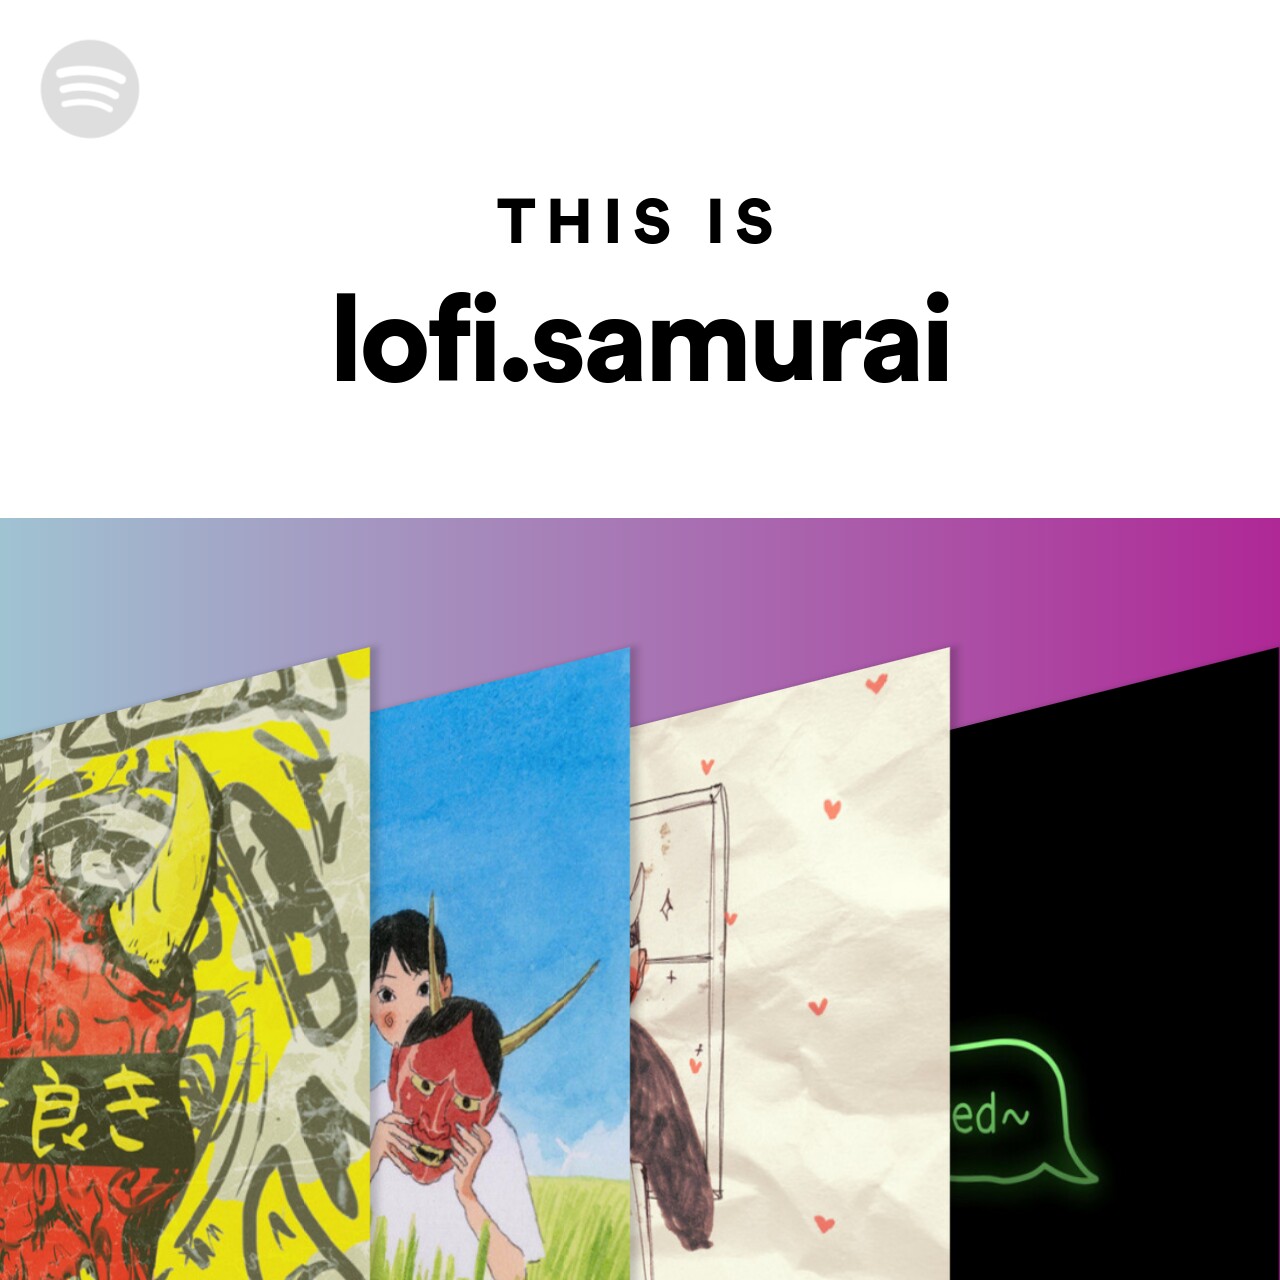 This Is lofi.samurai